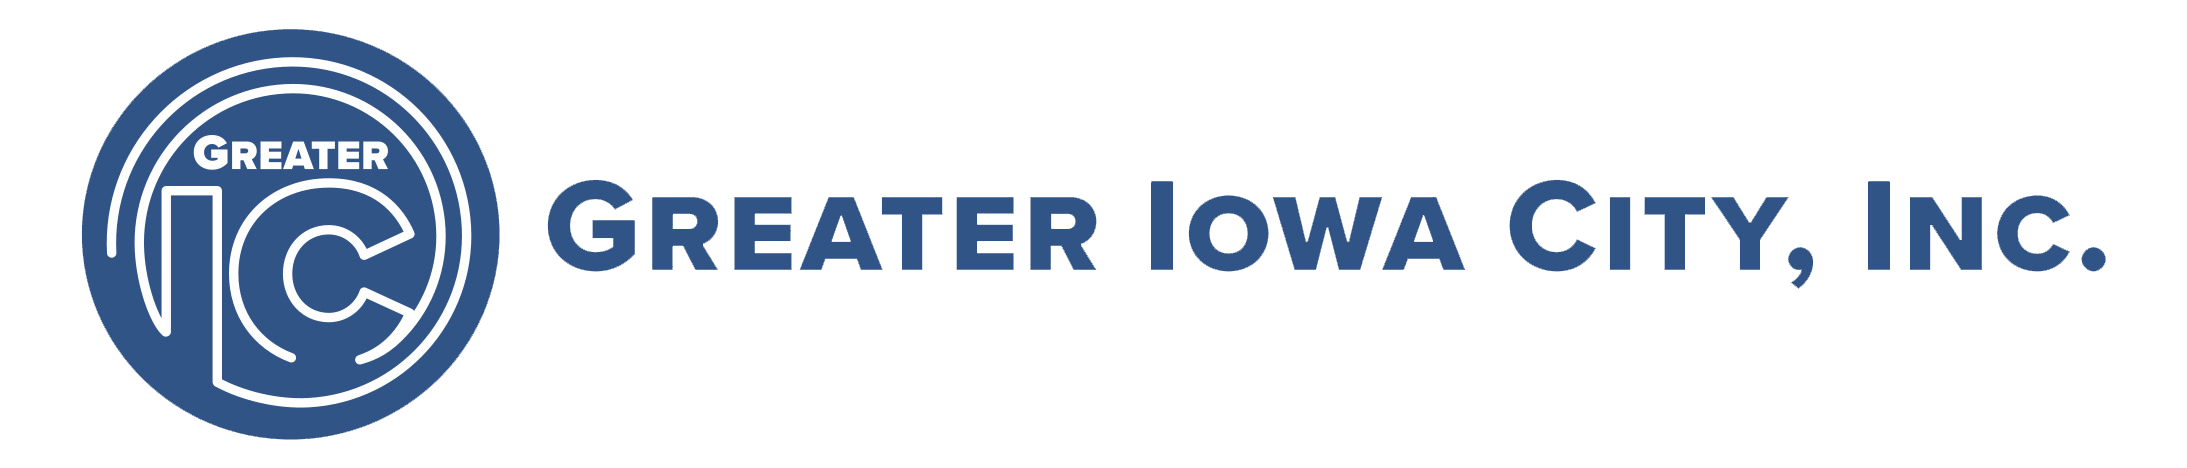 Greater-Iowa-City-logo